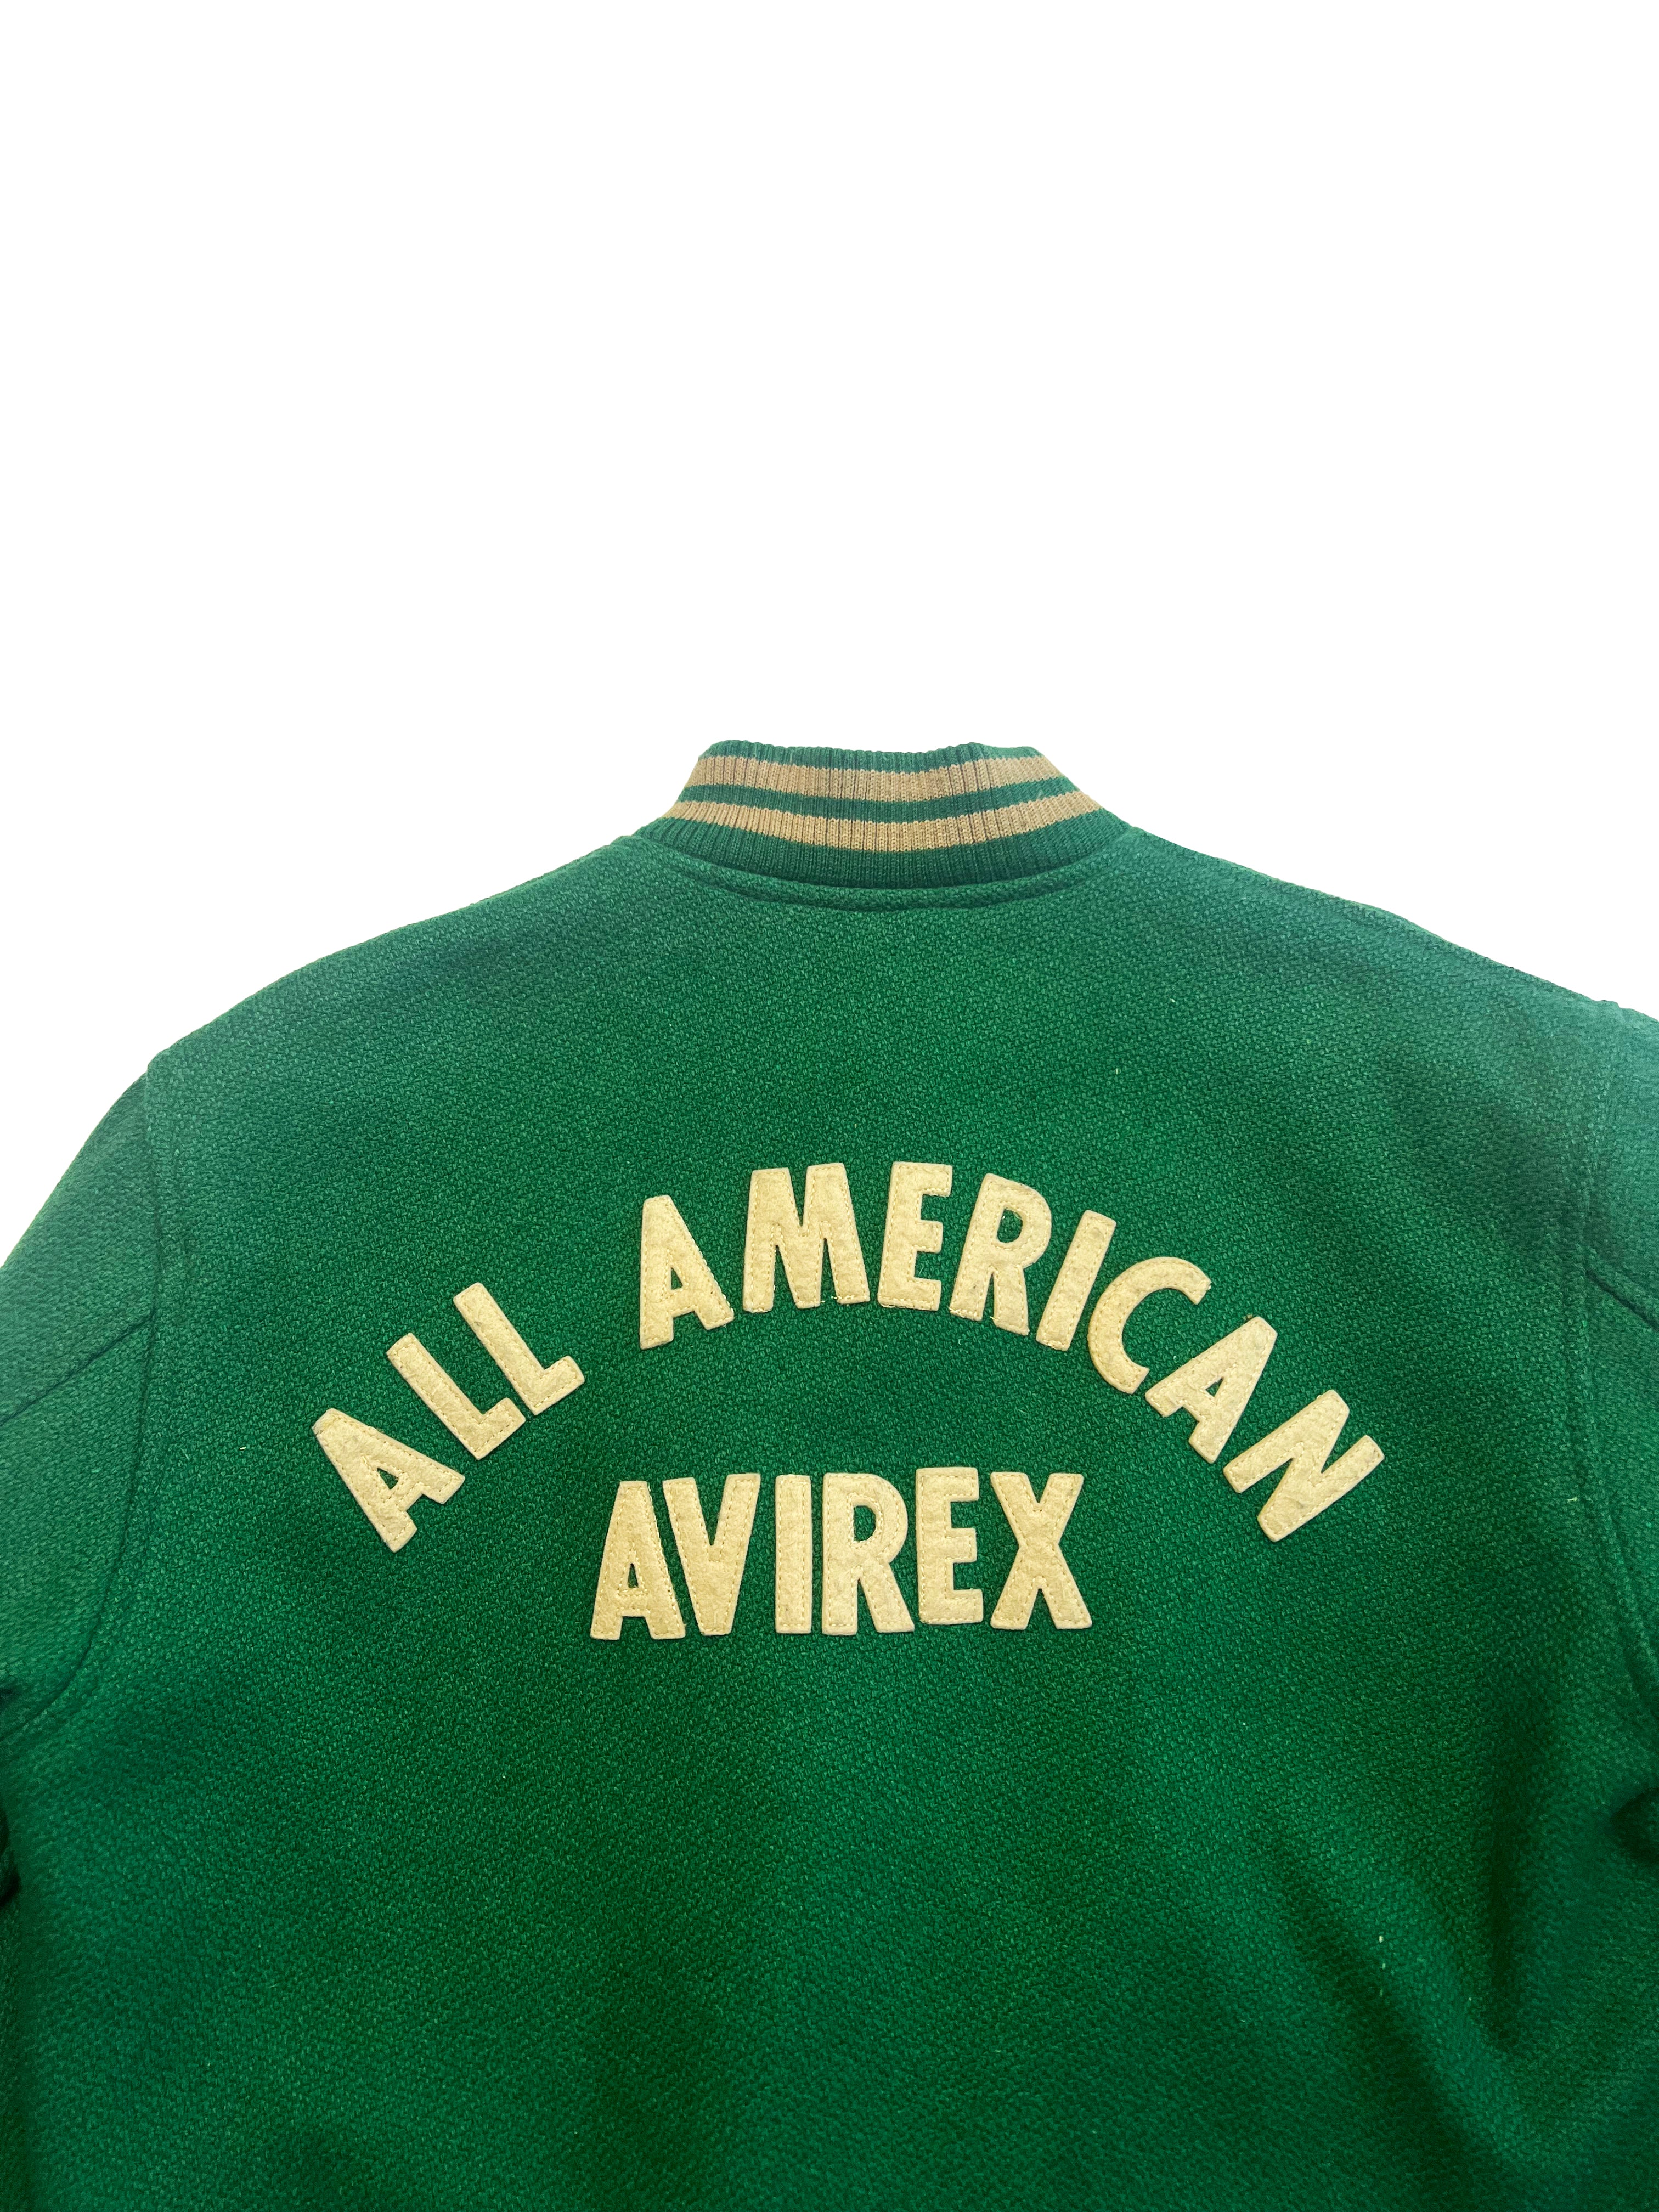 Avirex 'All American' Green Bomber 80's